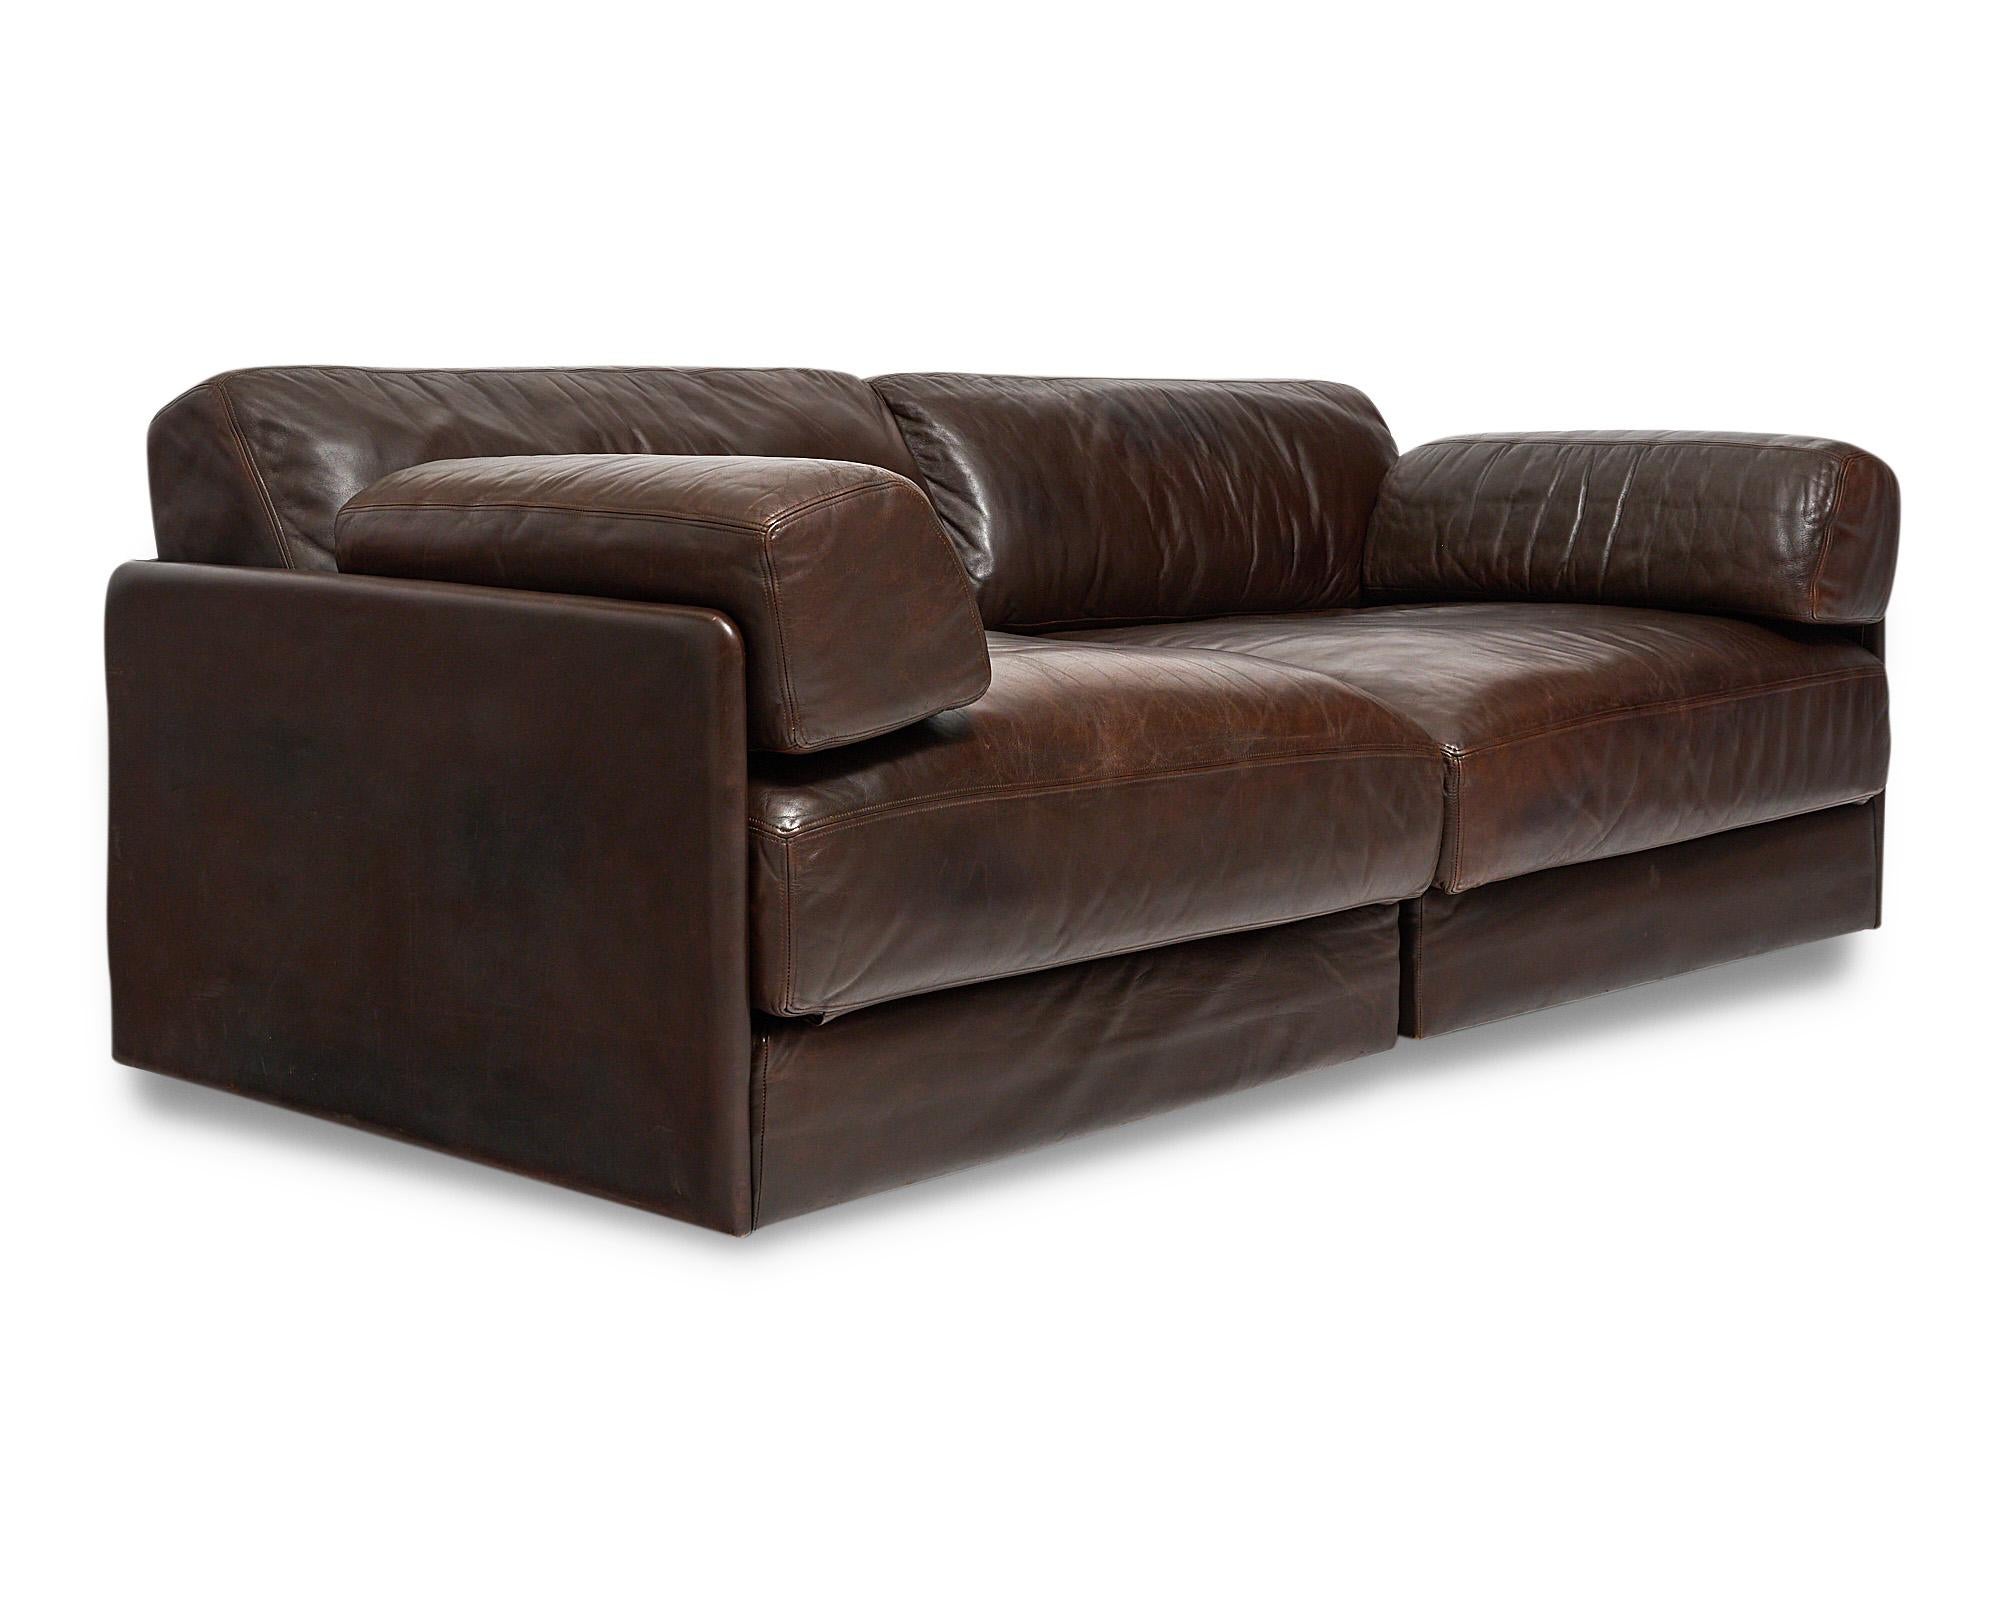 Sofa, aus der Schweiz, DeSede exklusiv, Modell DS 76, gepolstert mit dickem braunem Leder. Das Sofa besteht aus zwei Modulen mit Schlafsofa-Funktion. Normale Abnutzungserscheinungen und Patina.